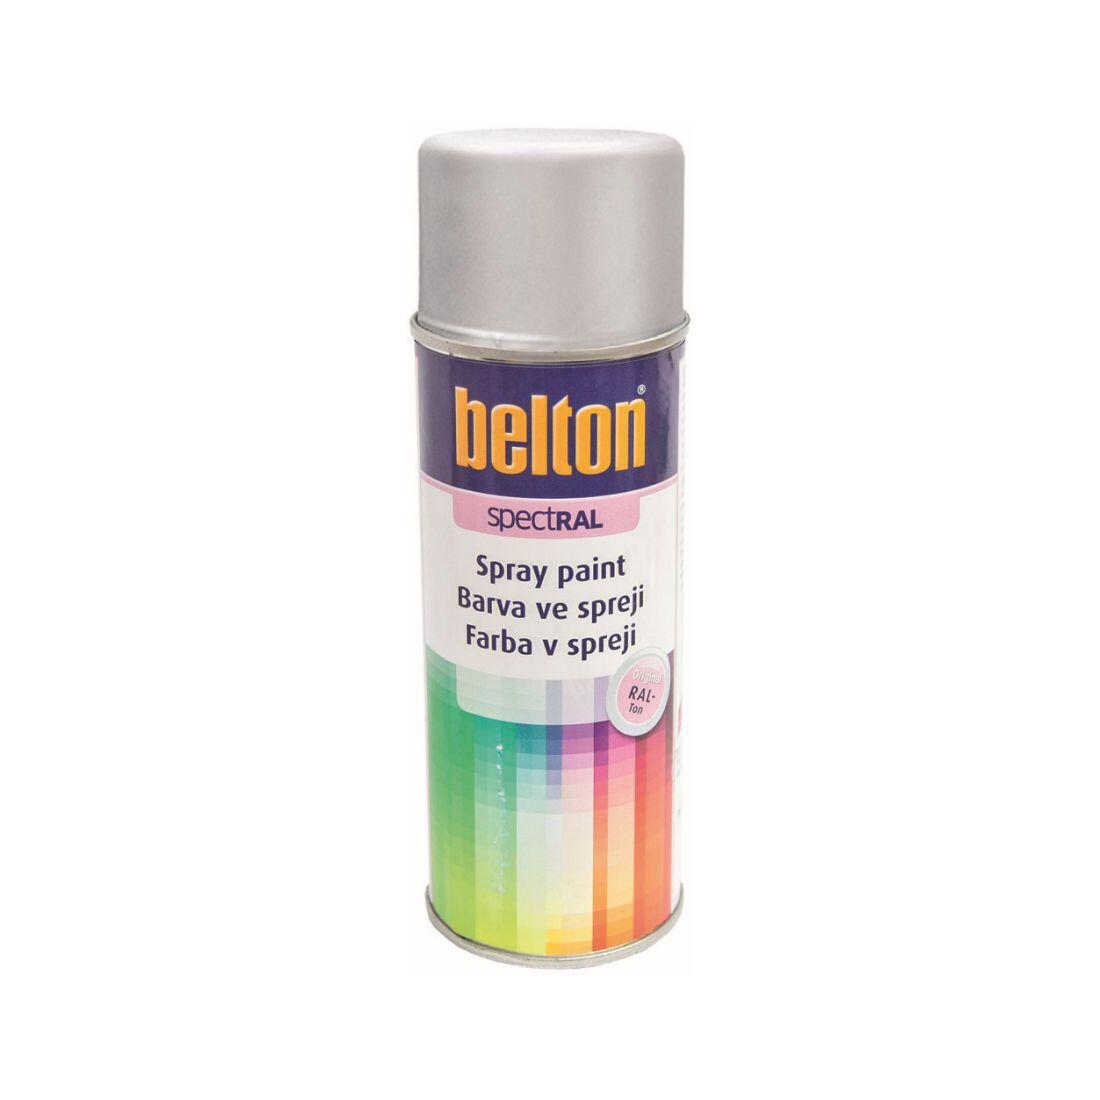 barva ve spreji BELTON RAL 9006, 400ml BÍ Al 0.31 Kg MAXMIX Sklad14 825383 19